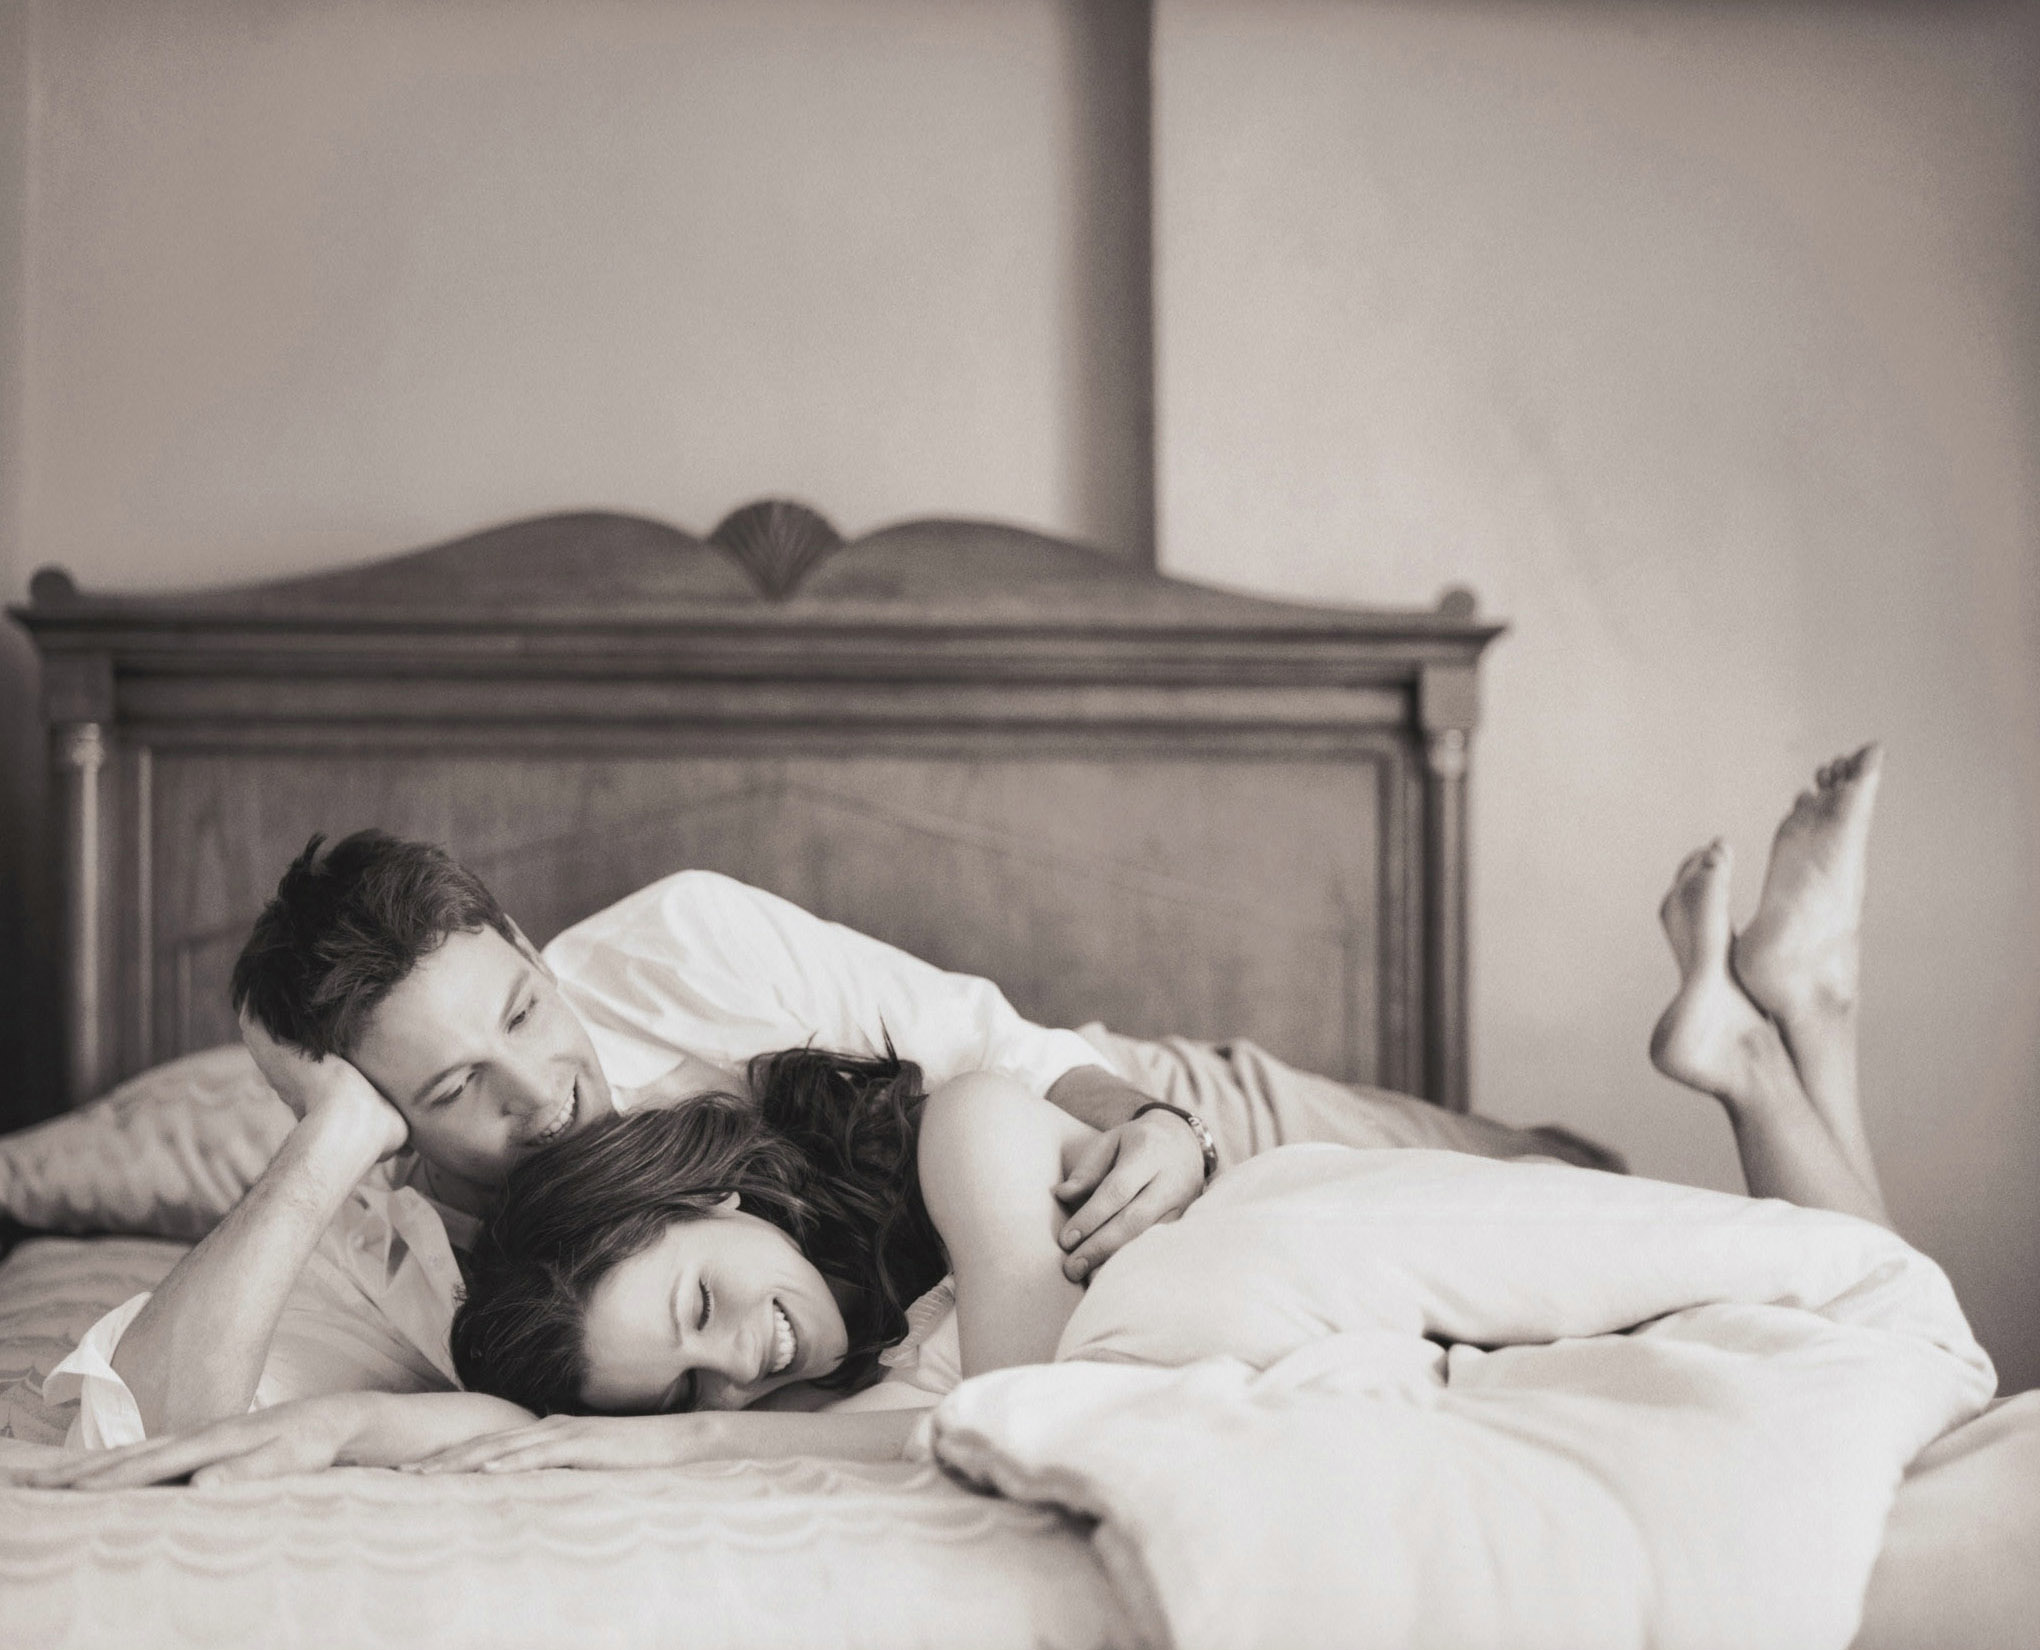 Разбудить спящую жену хуем в пизду будет дорого стоить для мужа